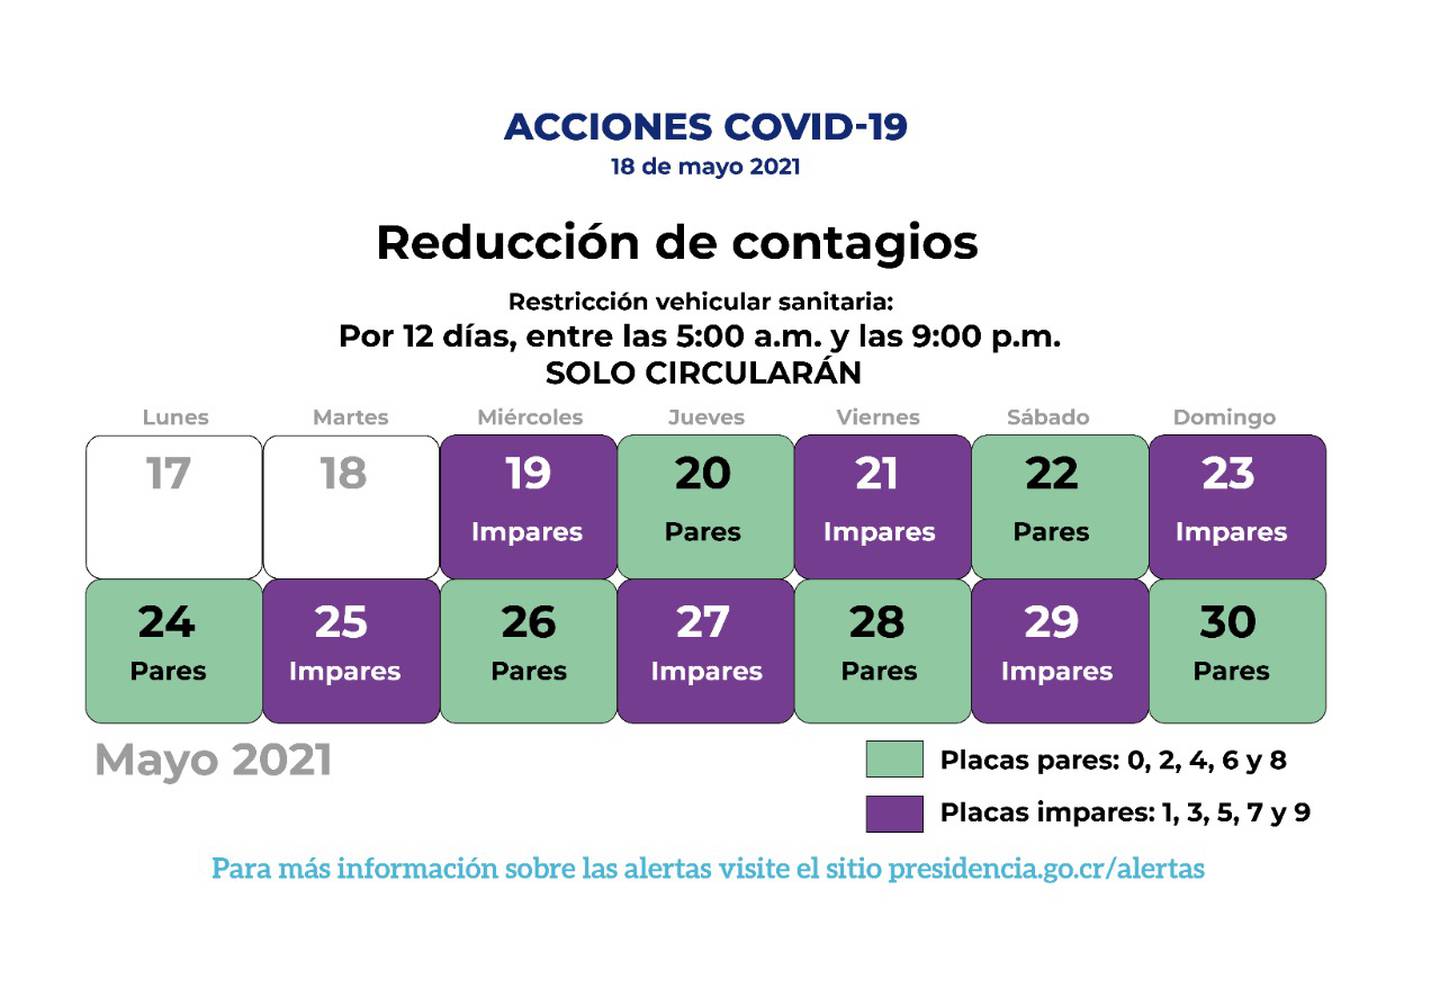 Nueva fórmula para la restricción vehicular sanitaria del 19 al 30 de mayo del 2021